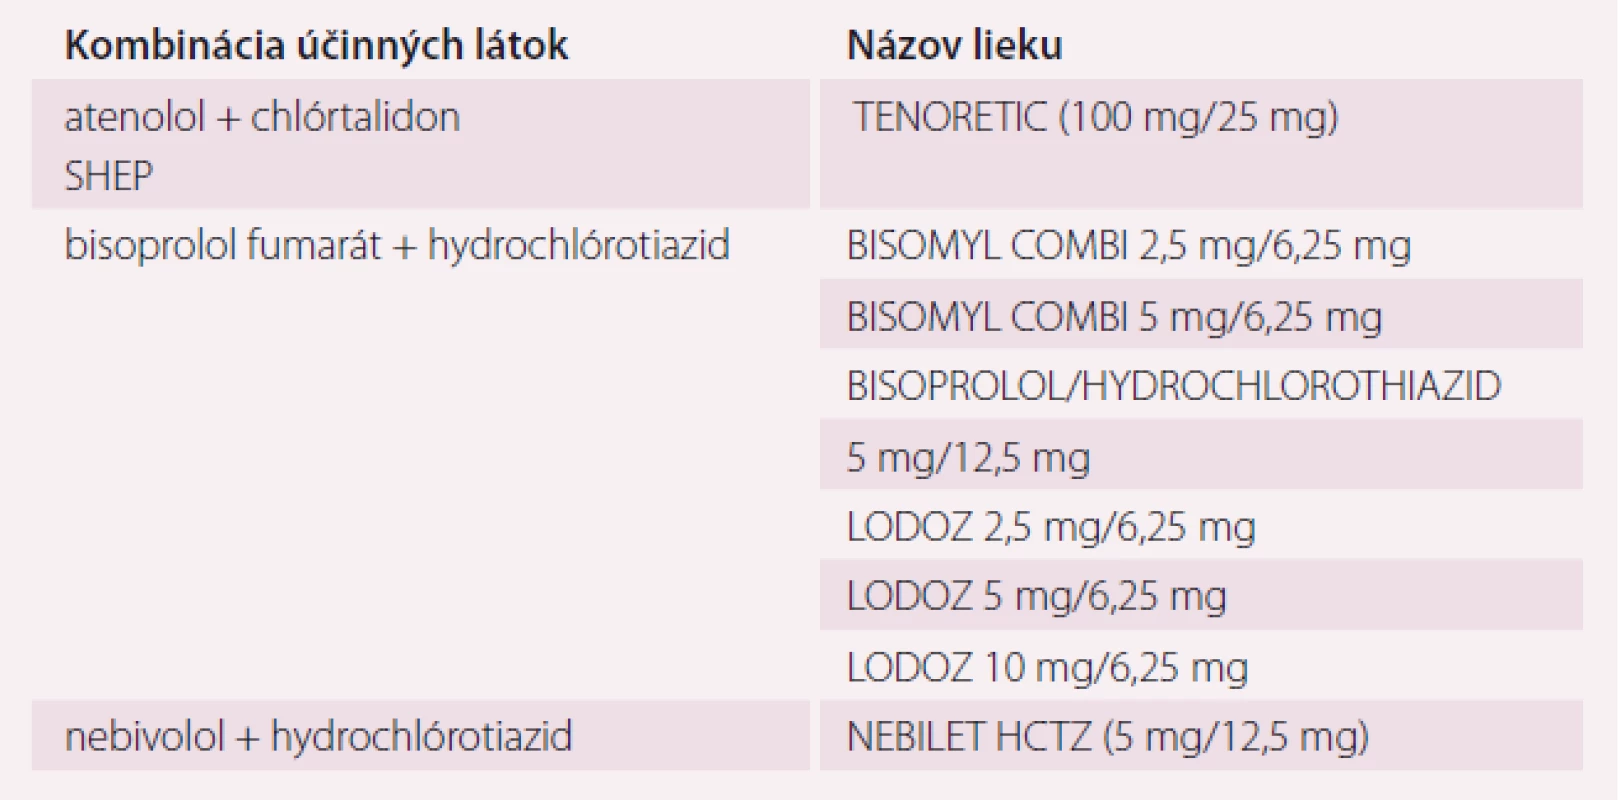 Fixná antihypertenzná dvojkombinácia betablokátor a diuretikum (zoradené abecedne podľa prvej účinnej látky a pri každej kombinácii abecedne podľa názvu lieku; aktuálne je v SR 8 liekov tejto skupiny) [19,31].